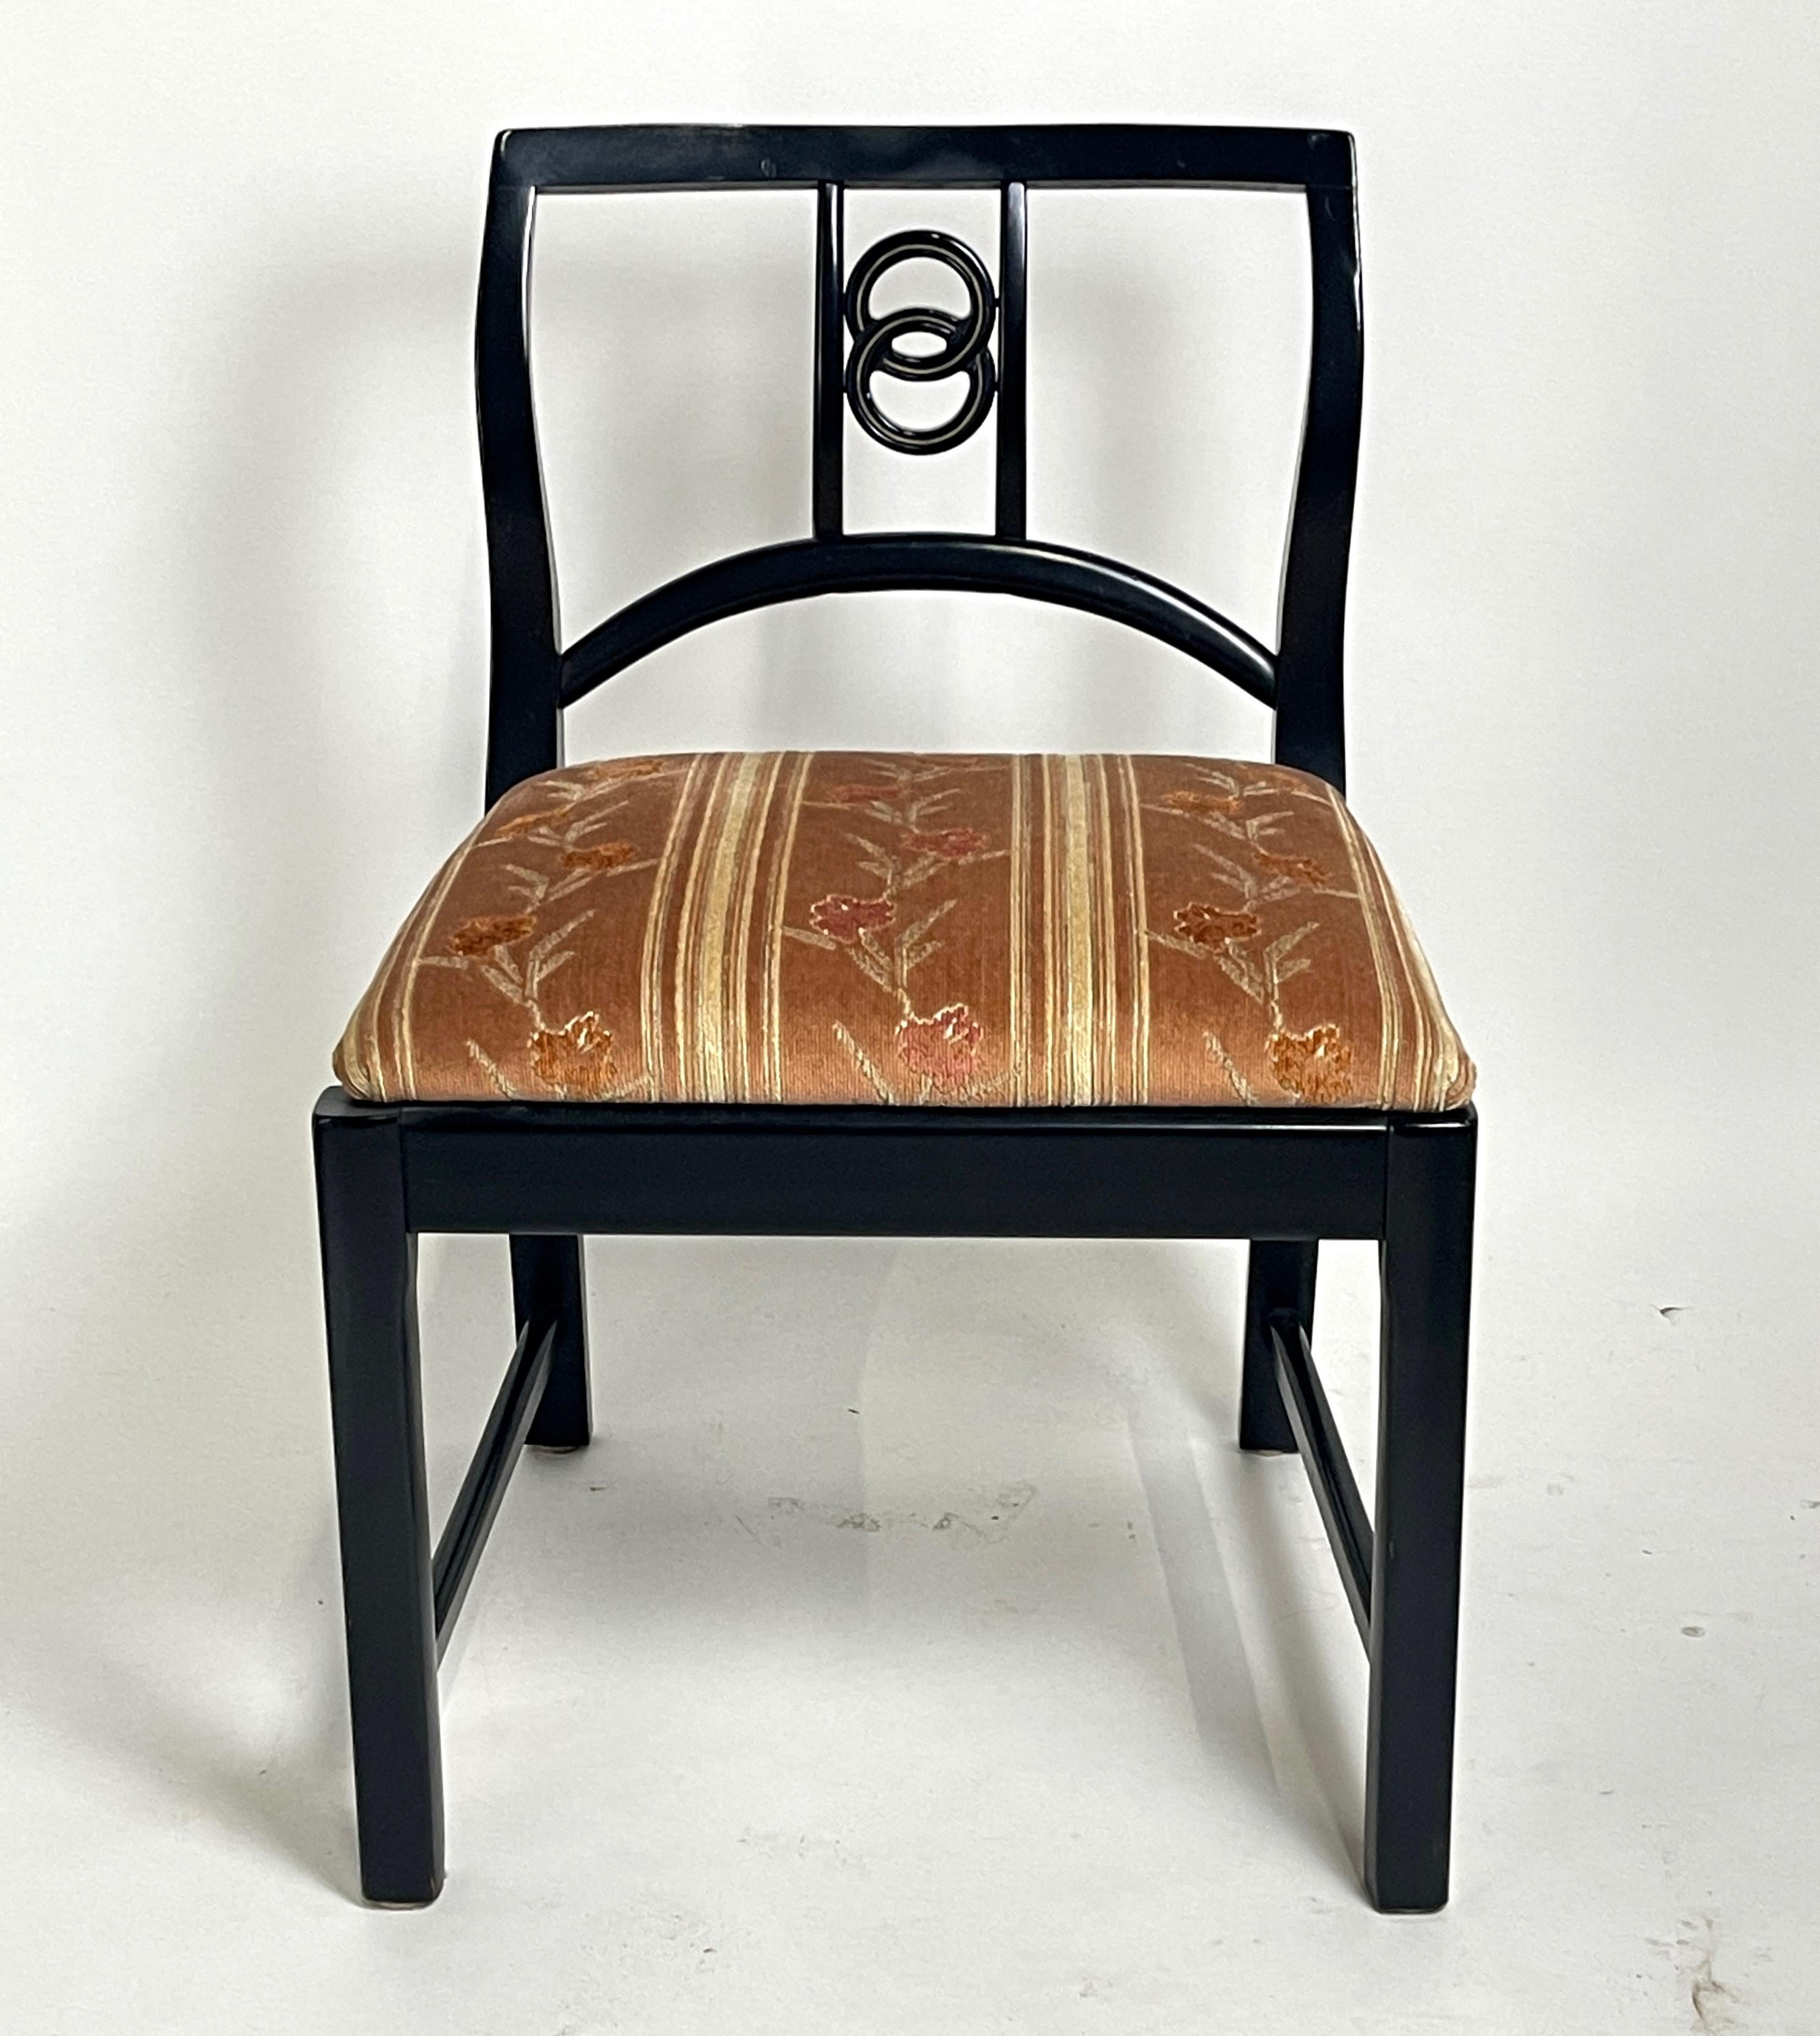 Seltenes und fabelhaftes Set von Michael Taylor für Baker Esszimmerstühle, bestehend aus 4 Seitenstühlen und 2 Sesseln in sehr gutem Originalzustand. Die Gestelle sind aus einem schönen, halbmatt lackierten Mahagoniholz gefertigt, während die Sitze